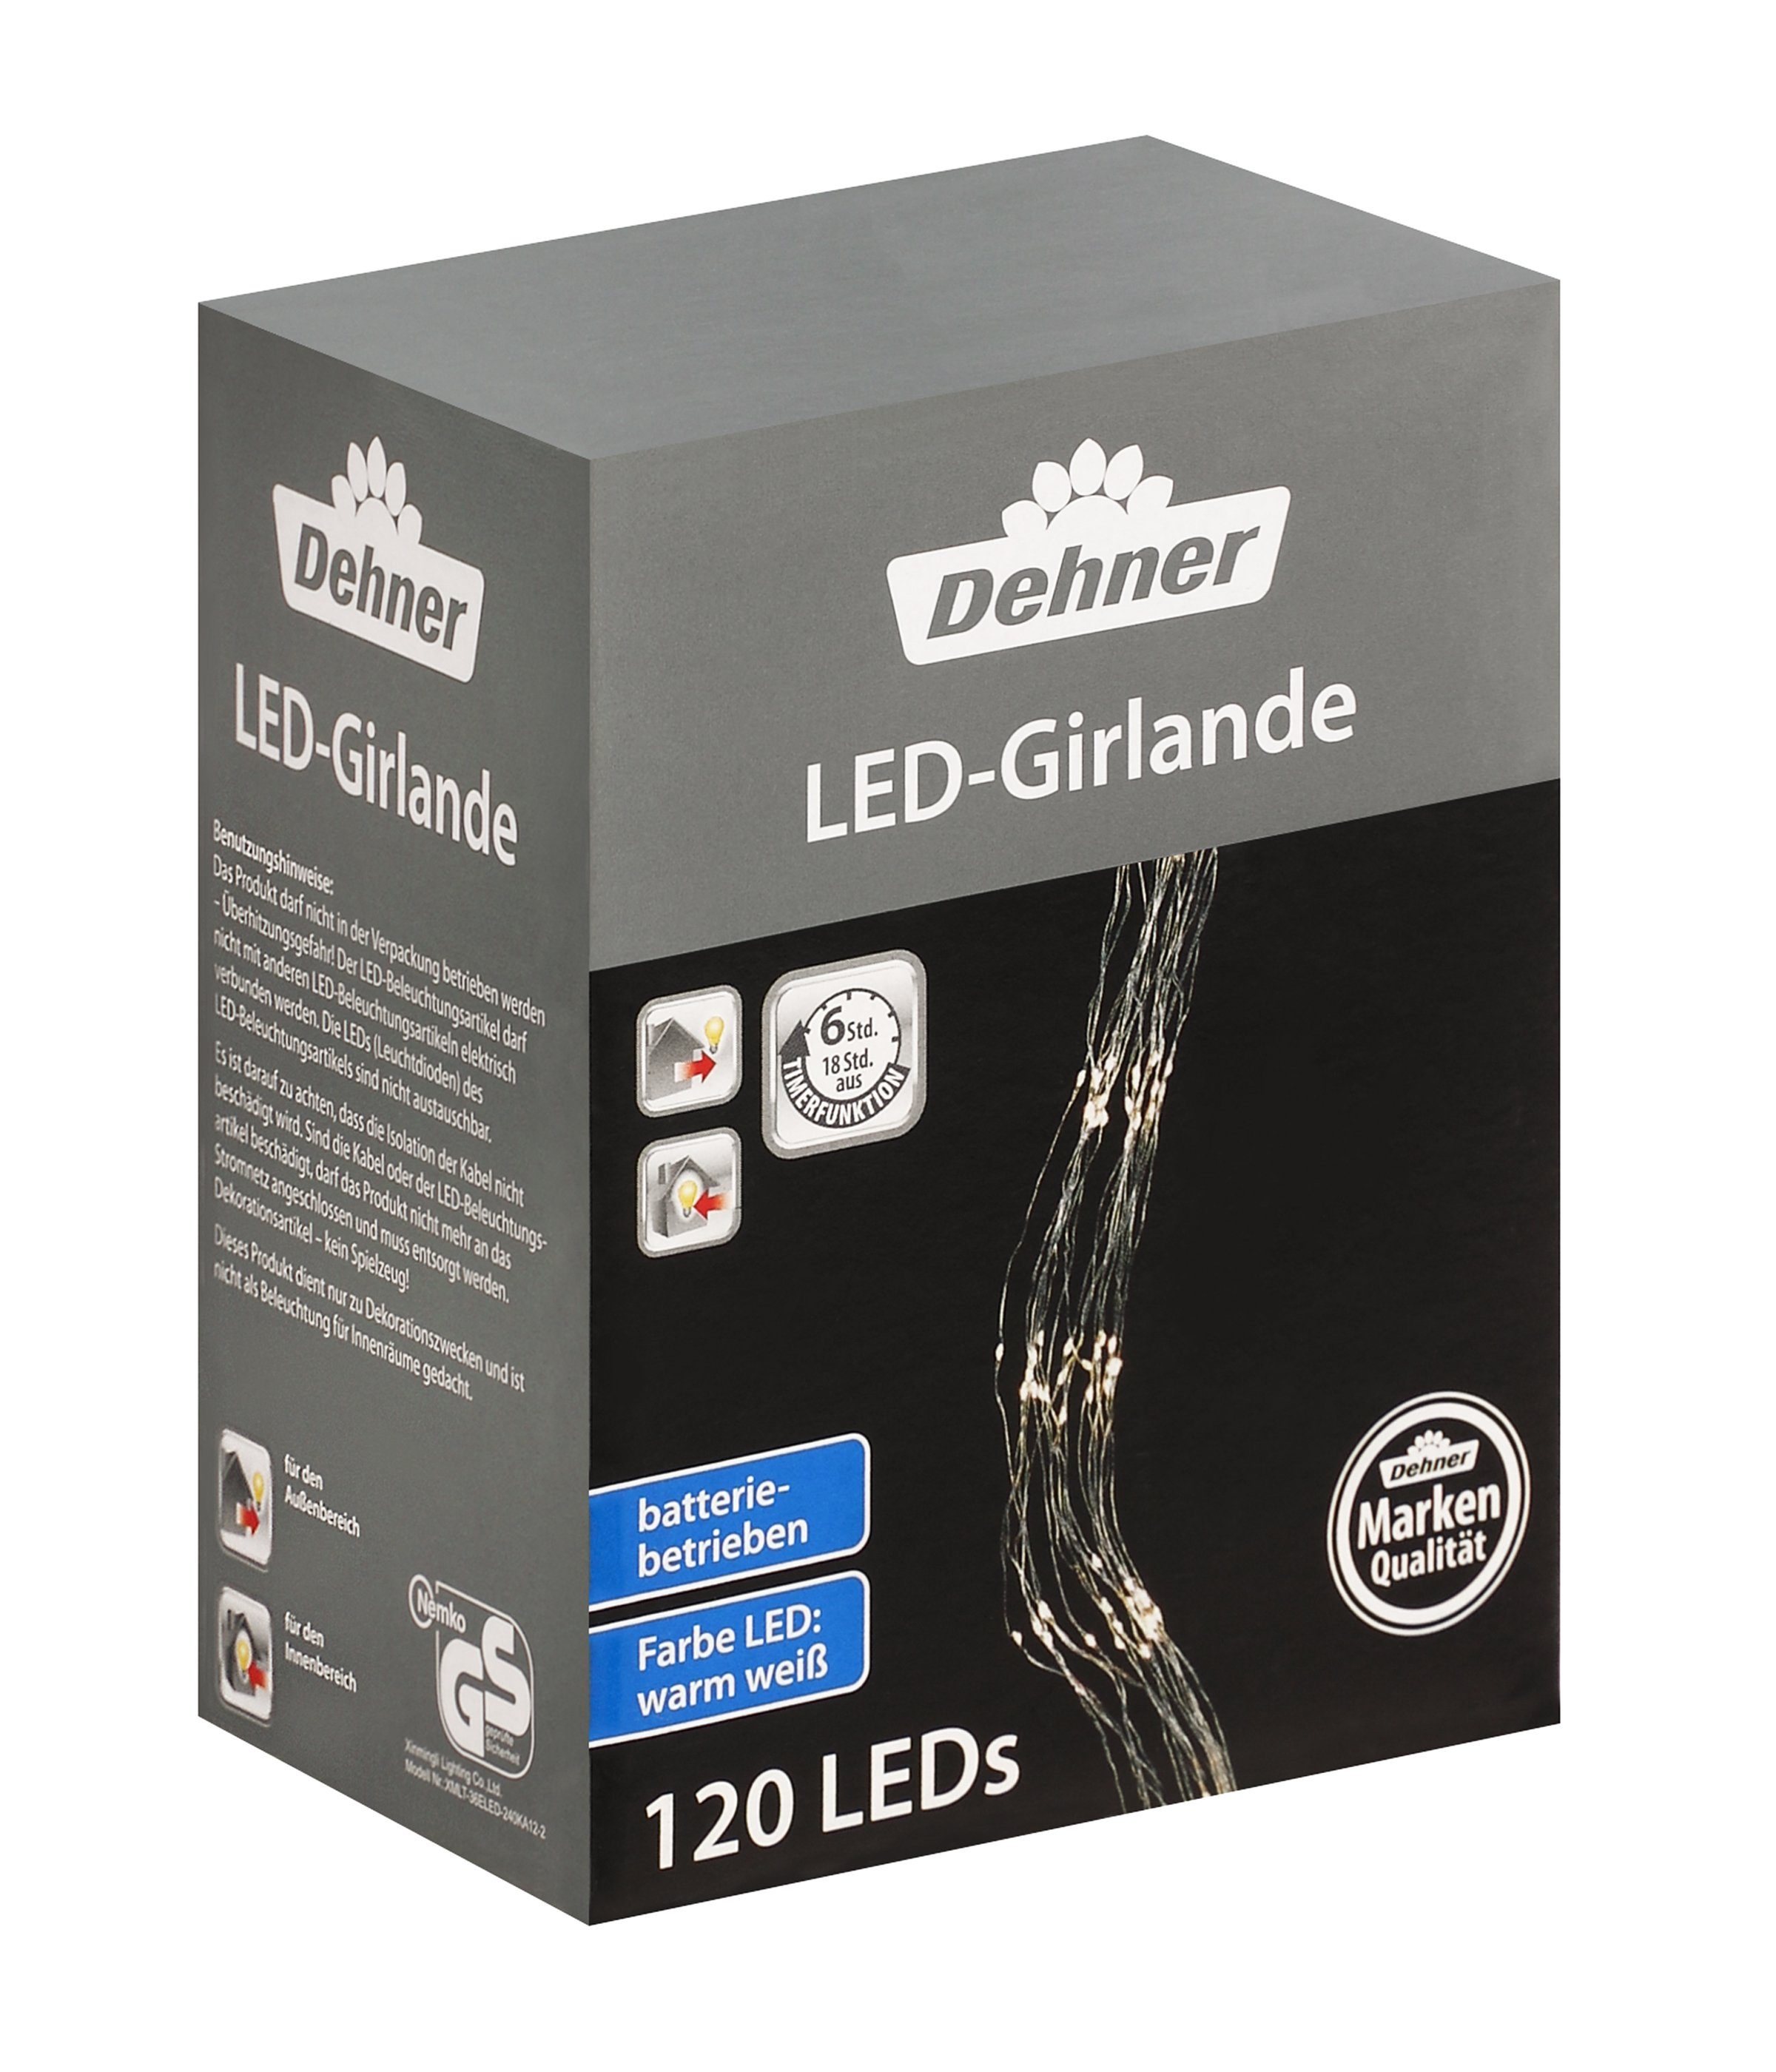 Dehner LED-Lichterkette LED Girlande, 120 LEDs, warmweiß, Länge 90 cm, Weihnachtsbeleuchtung für Indoor / Outdoor, mit 8h-Timer